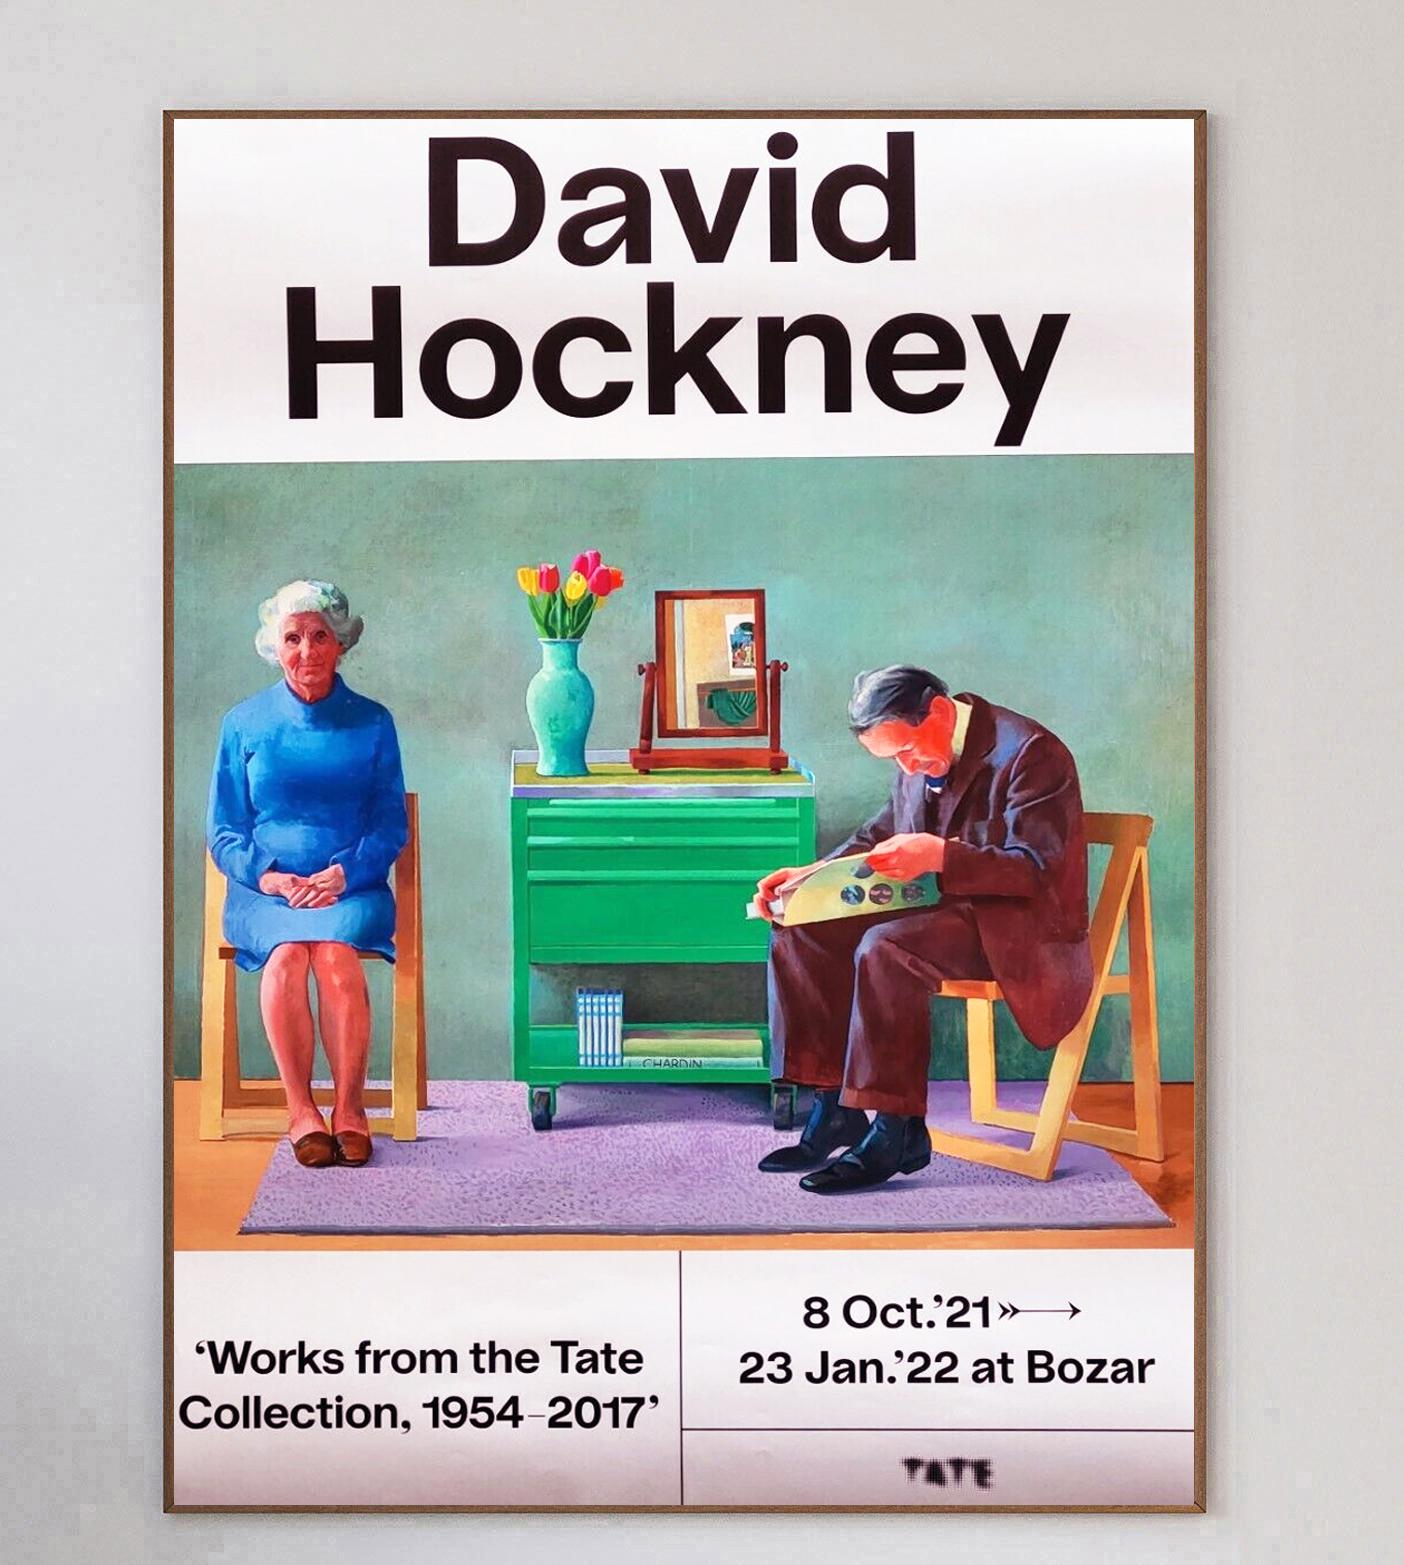 Dieses wunderschöne Plakat wirbt für die David Hockney-Ausstellung 